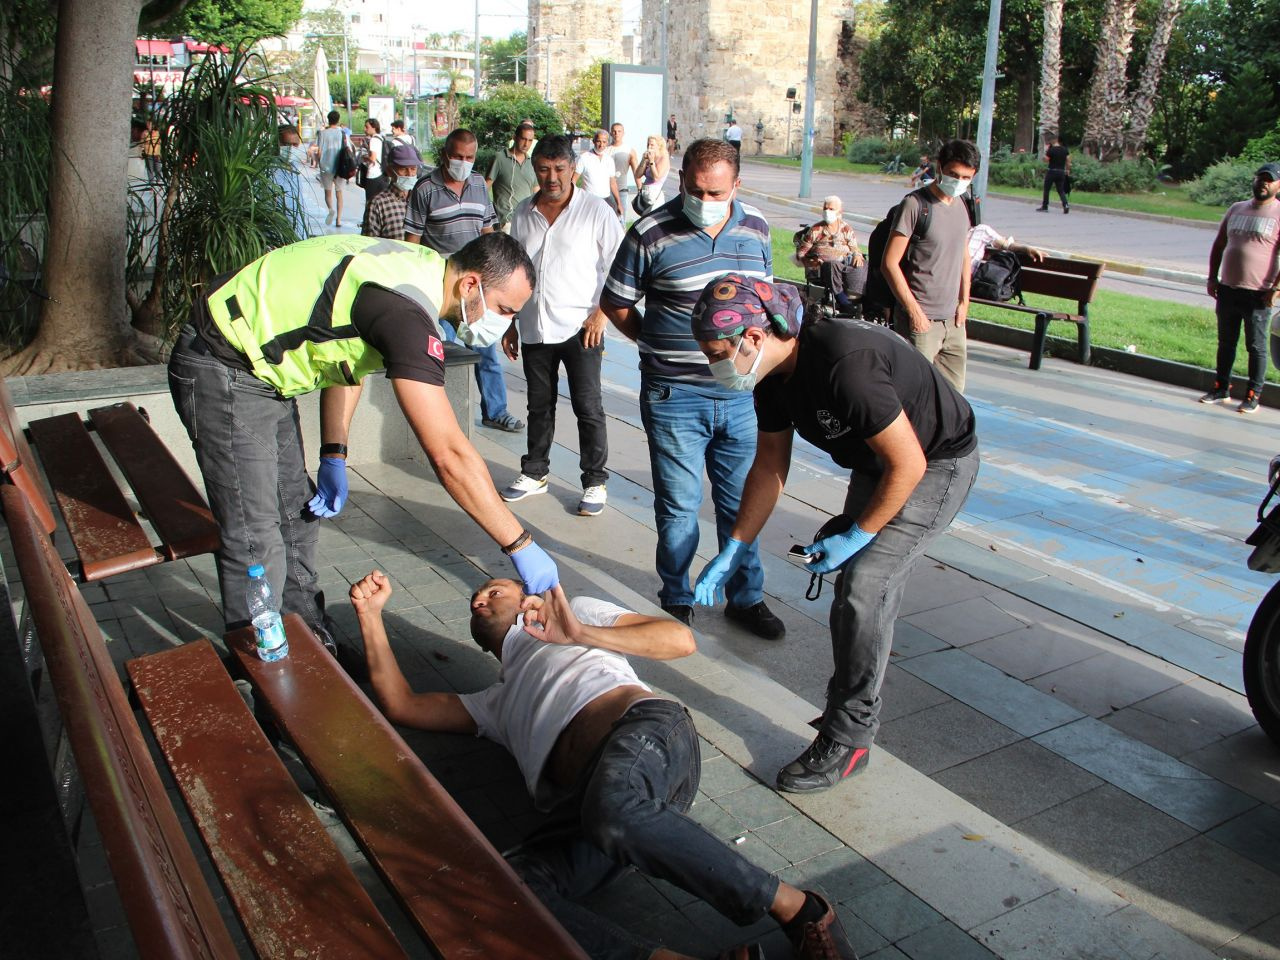 Antalya'da yerde görenler öldü sandı! Gerçek bakın ne çıktı: Rahatsızız, görüntü kötü